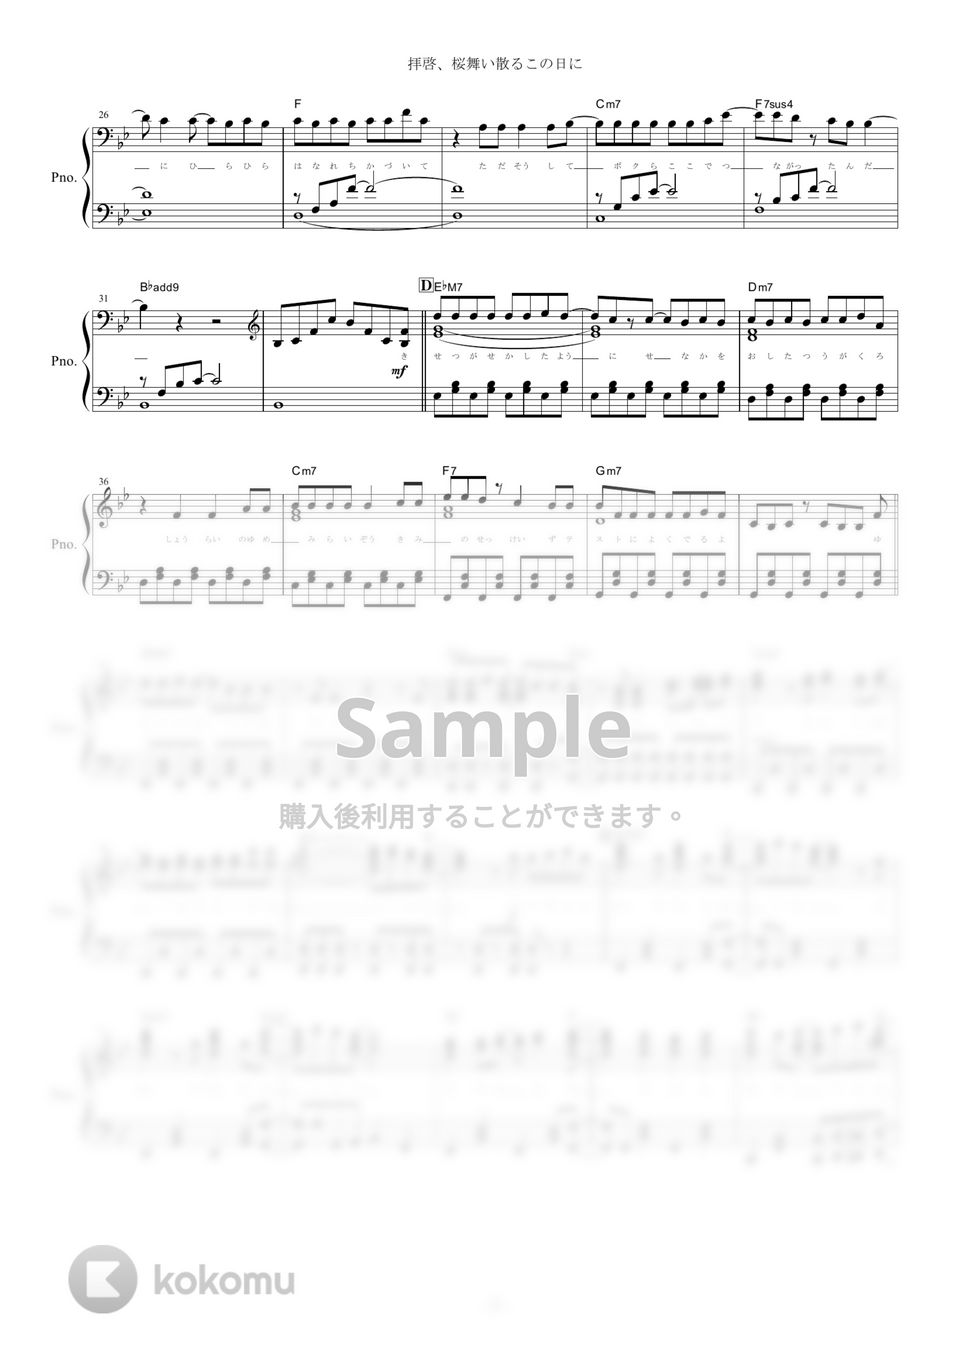 まふまふ - 拝啓、桜舞い散るこの日に (ピアノ楽譜/全６ページ) by yoshi